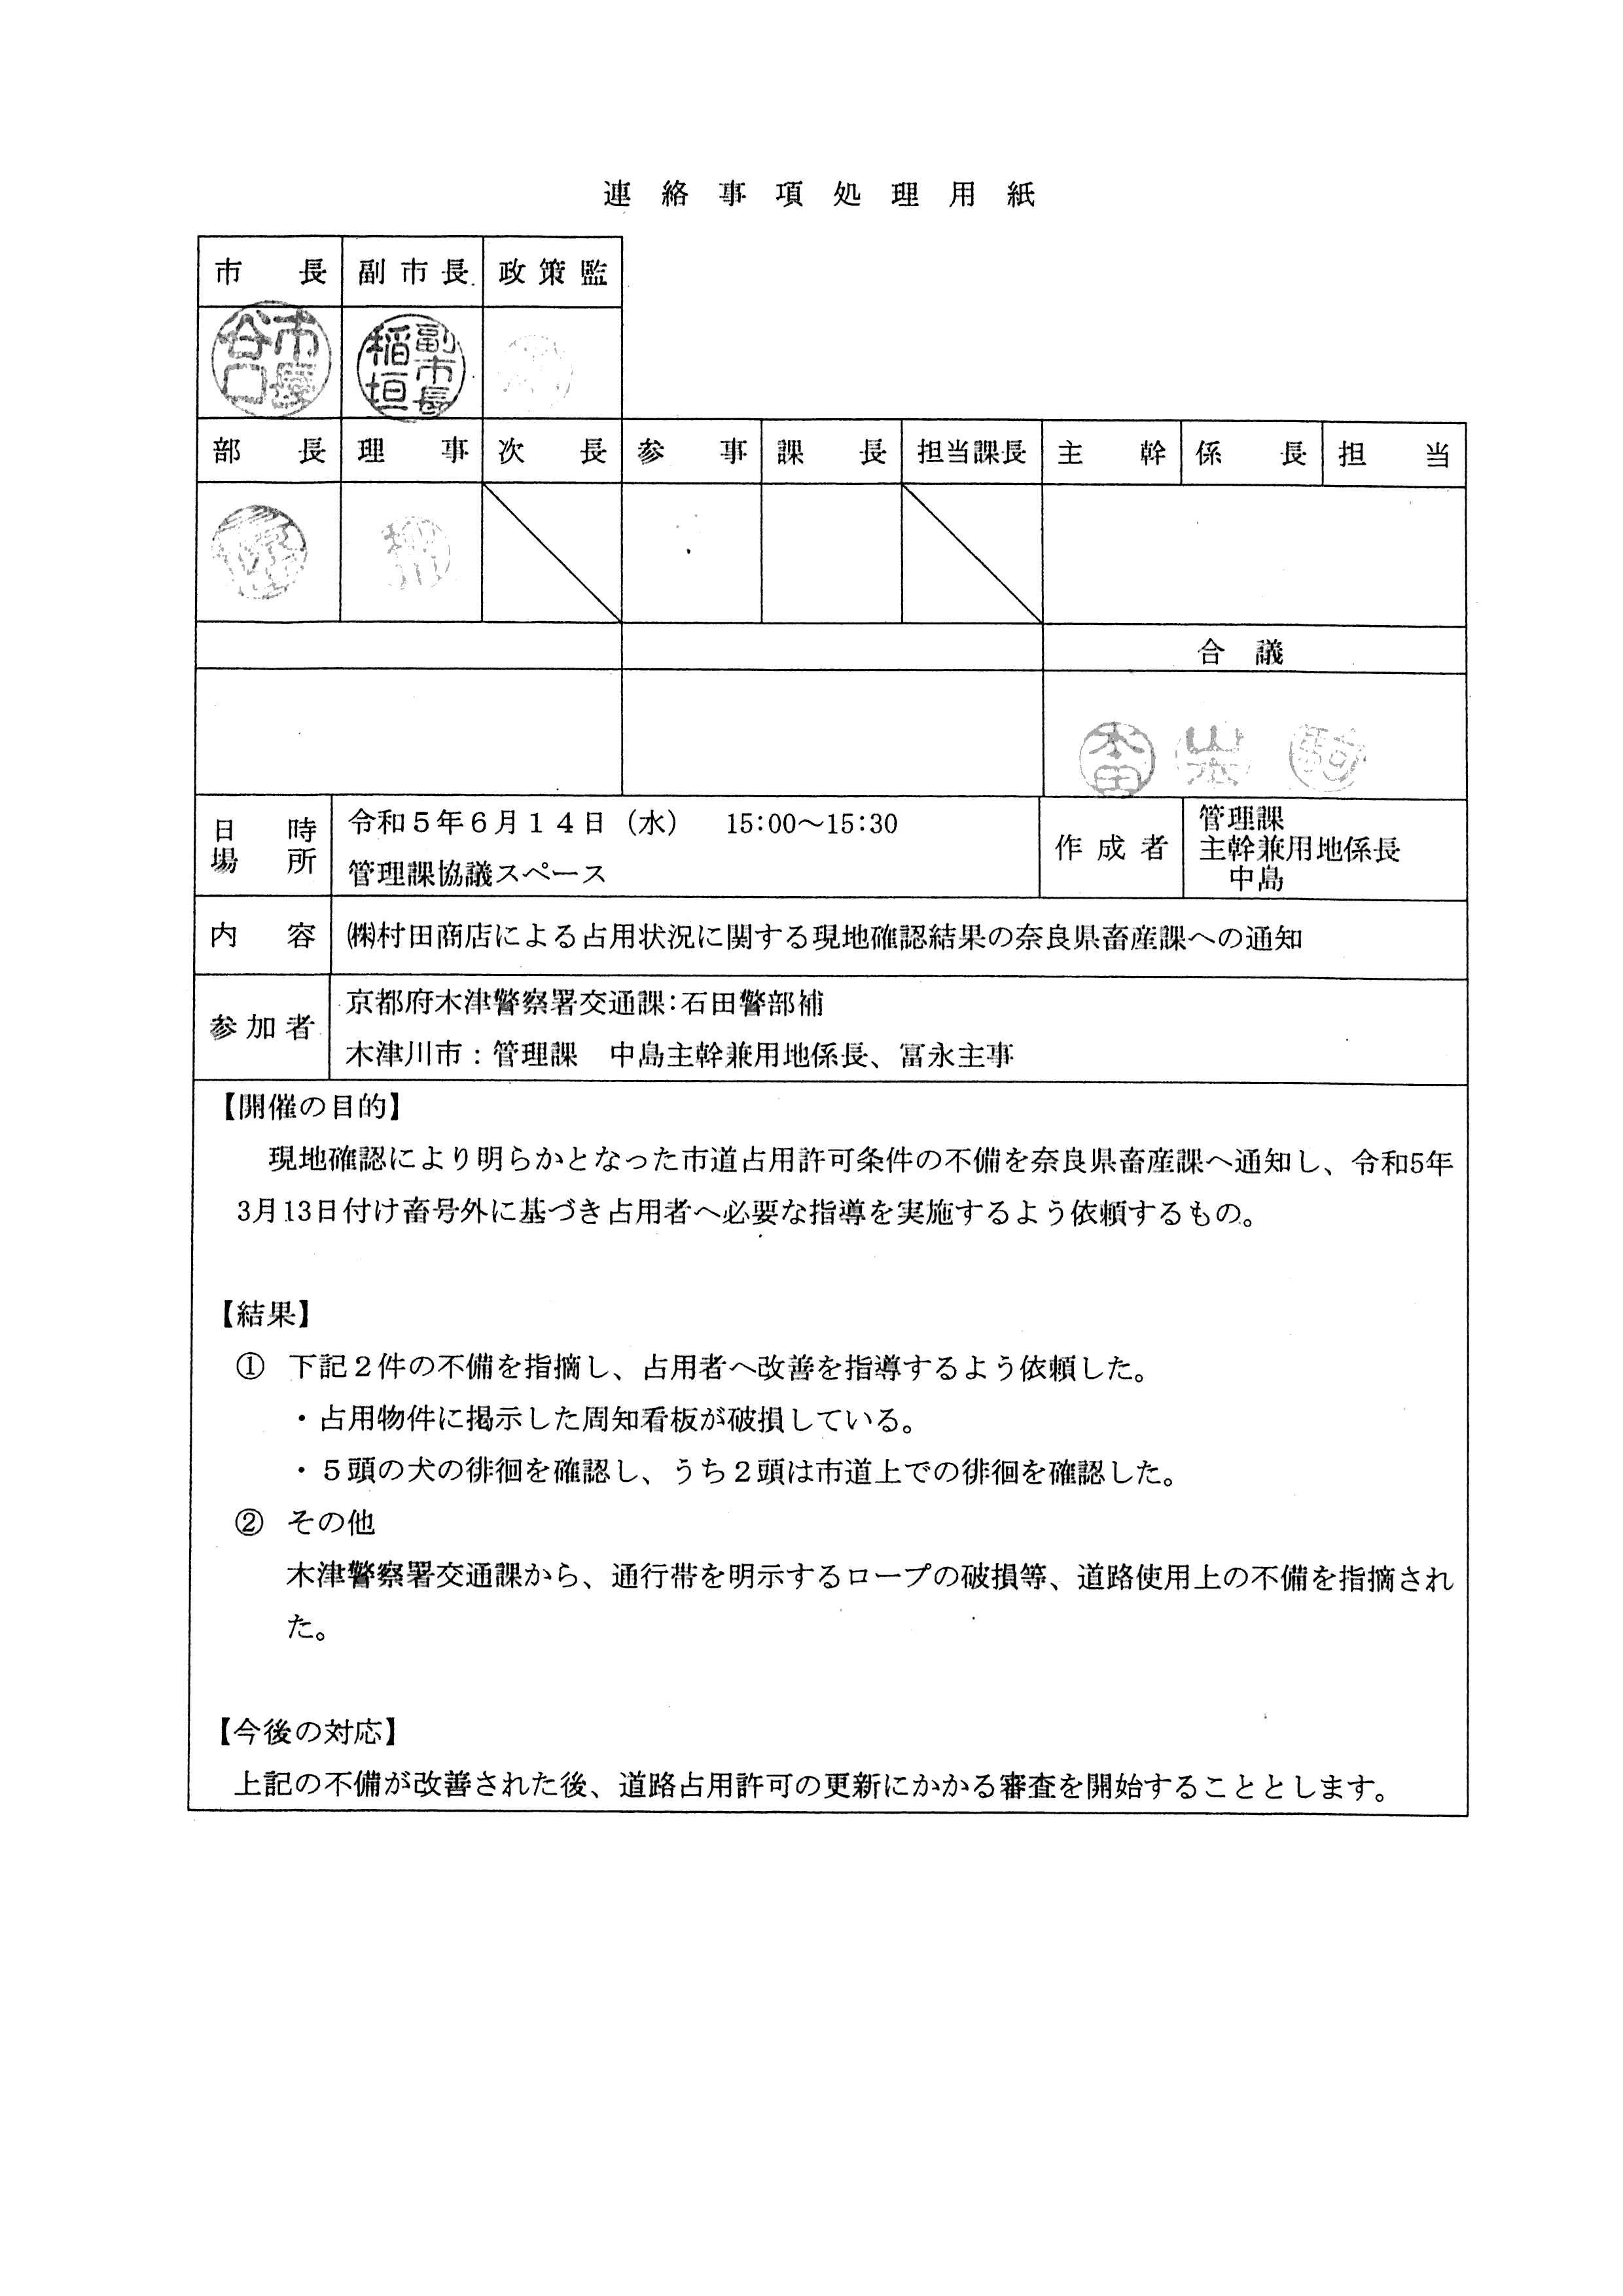 令和5(2023)年6月14日-(株)村田商店による占用状況に関する現地確認結果の奈良県畜産課への通知-01